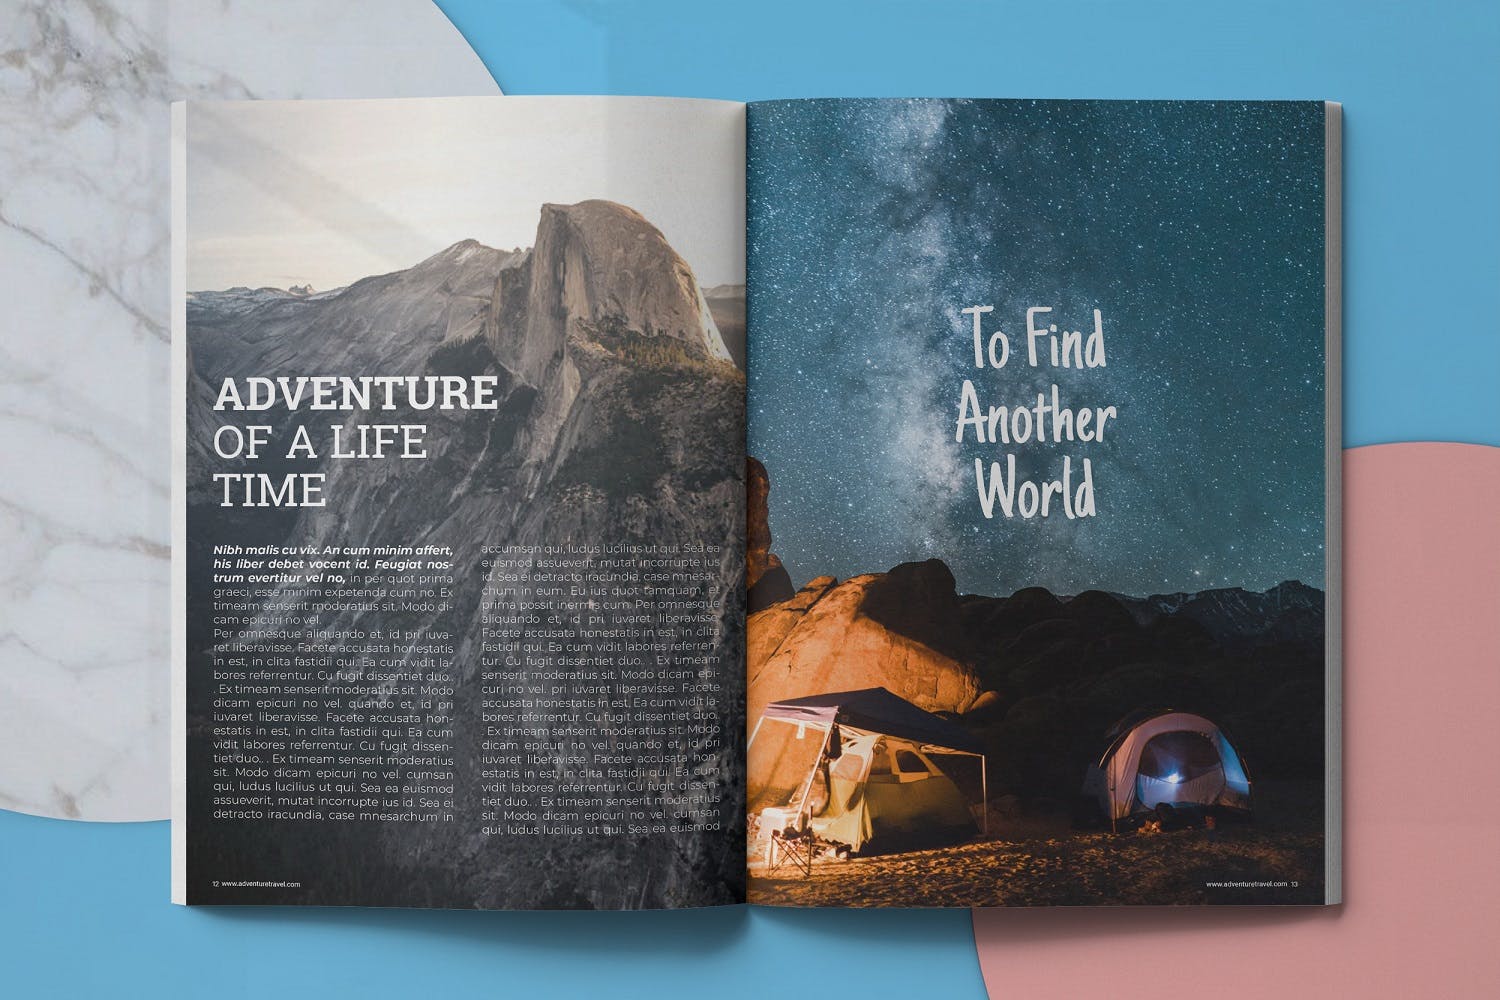 冒险旅行主题第一素材精选杂志排版设计模板 Adventure Travel Magazine Template插图(6)